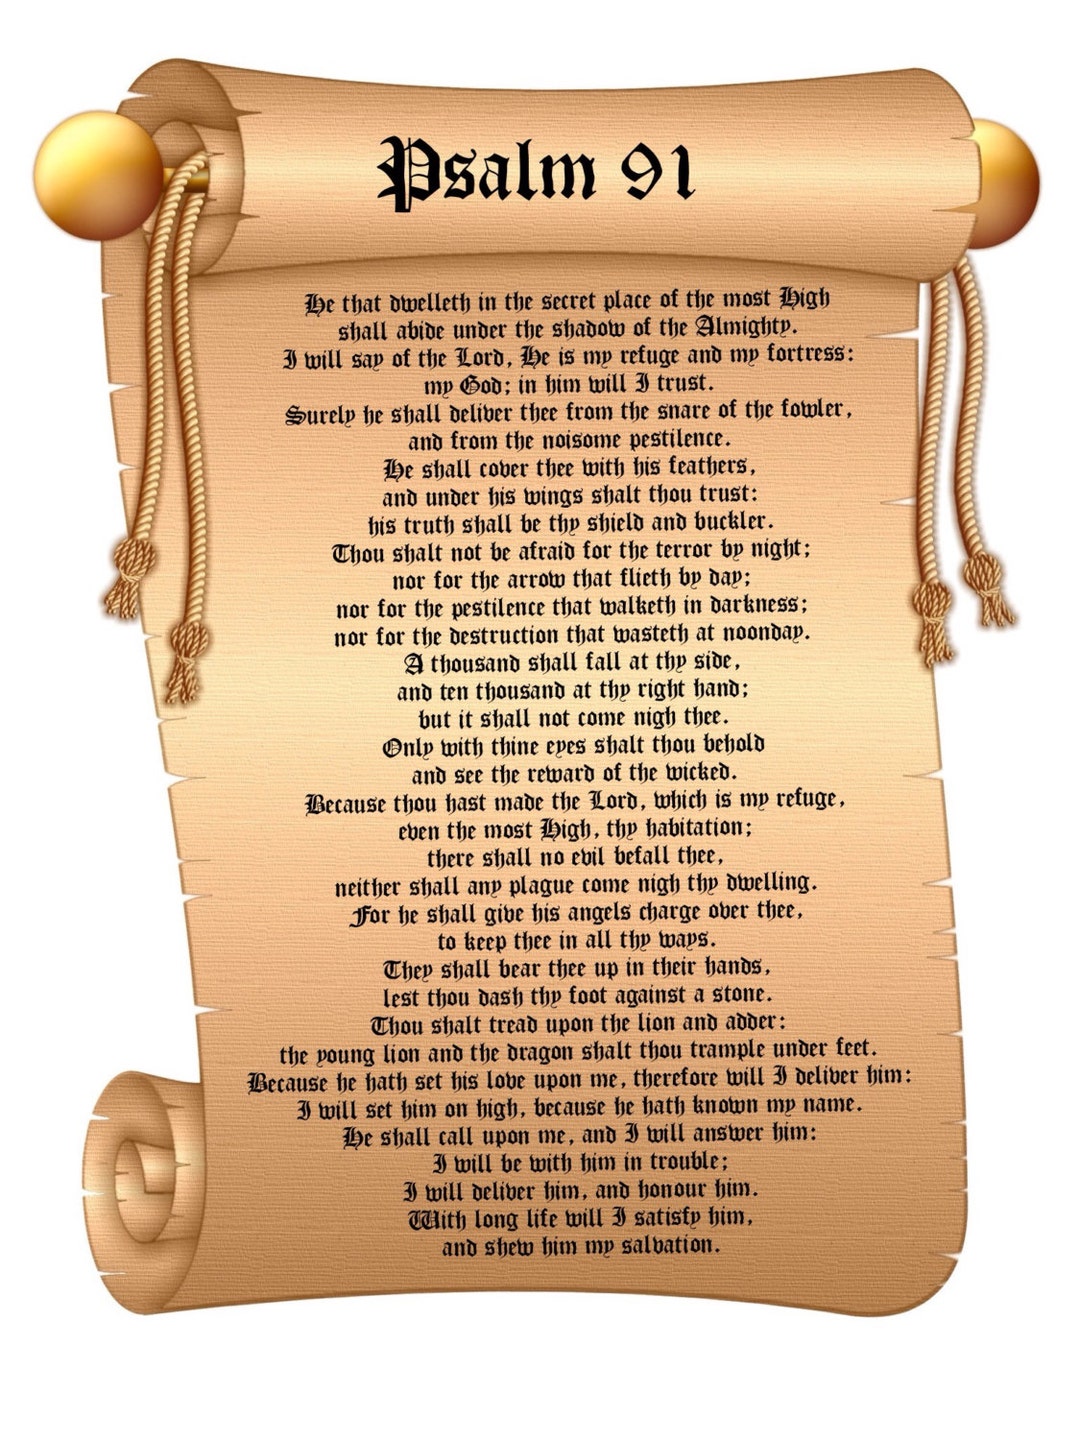 salmo 91 com letras grandes - Pesquisa Google